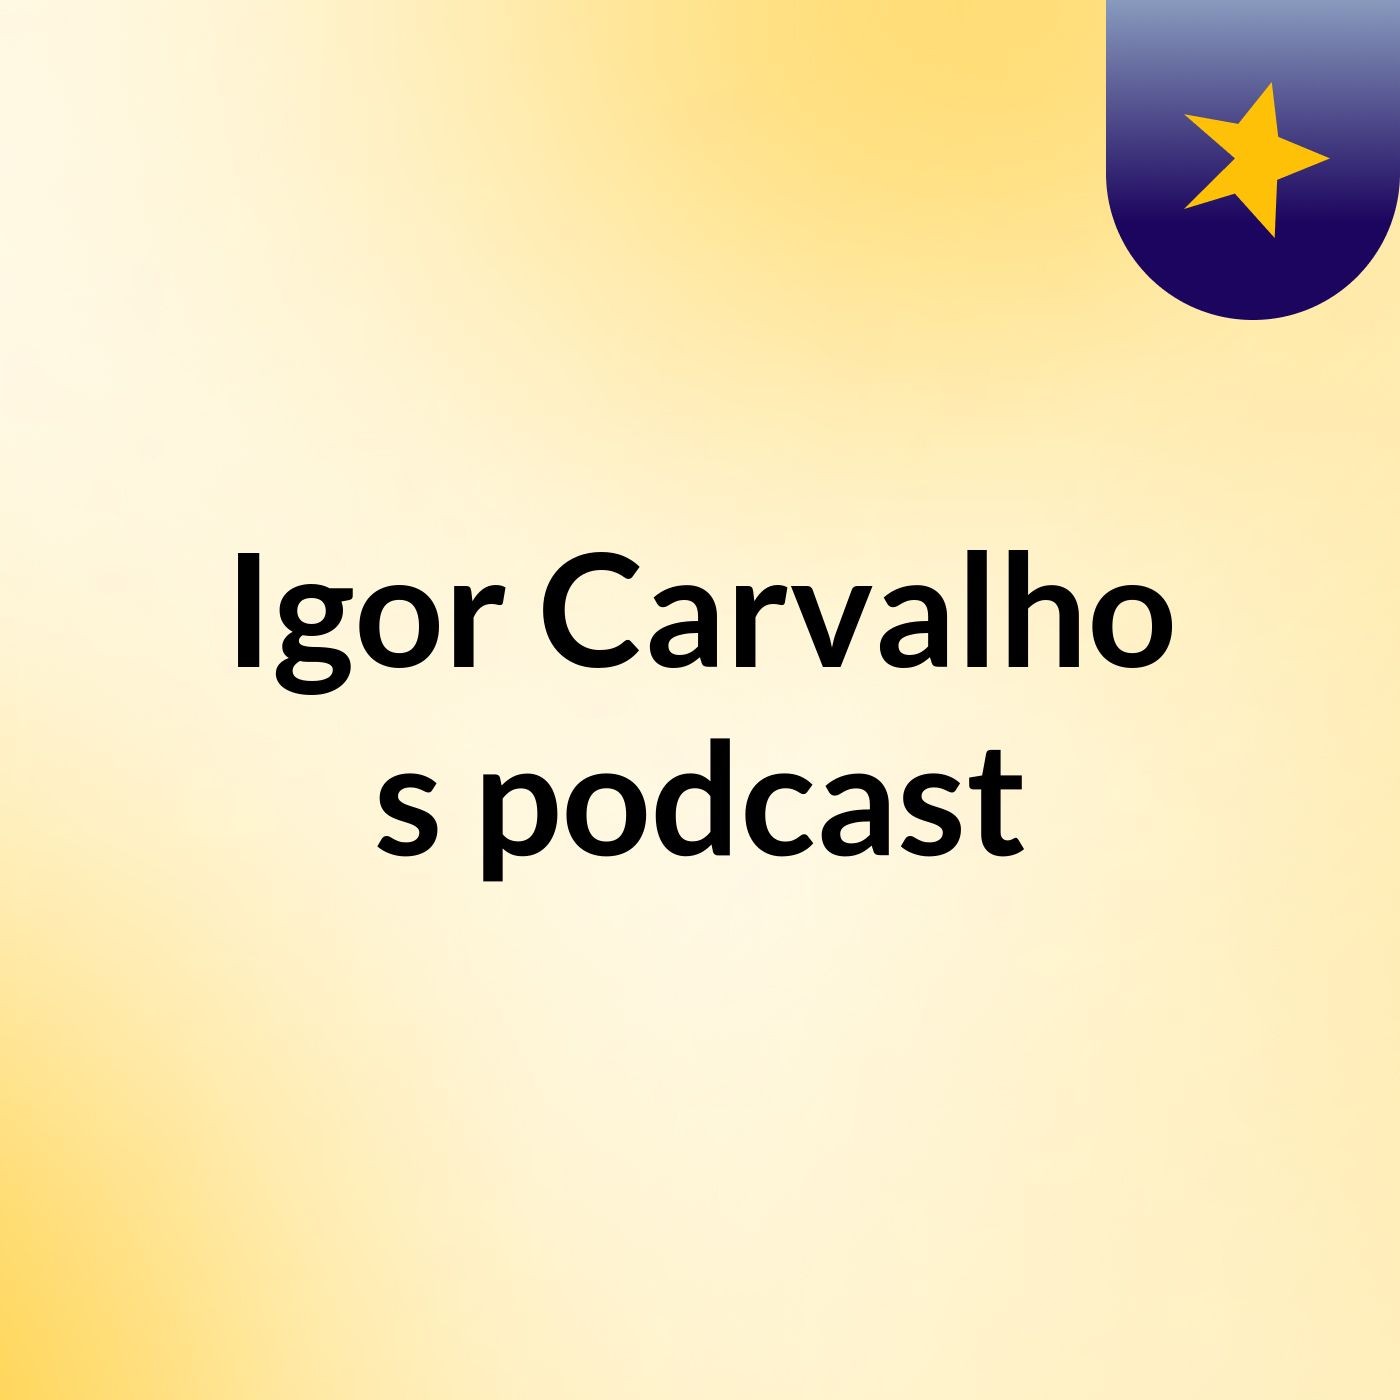 Igor Carvalho's podcast